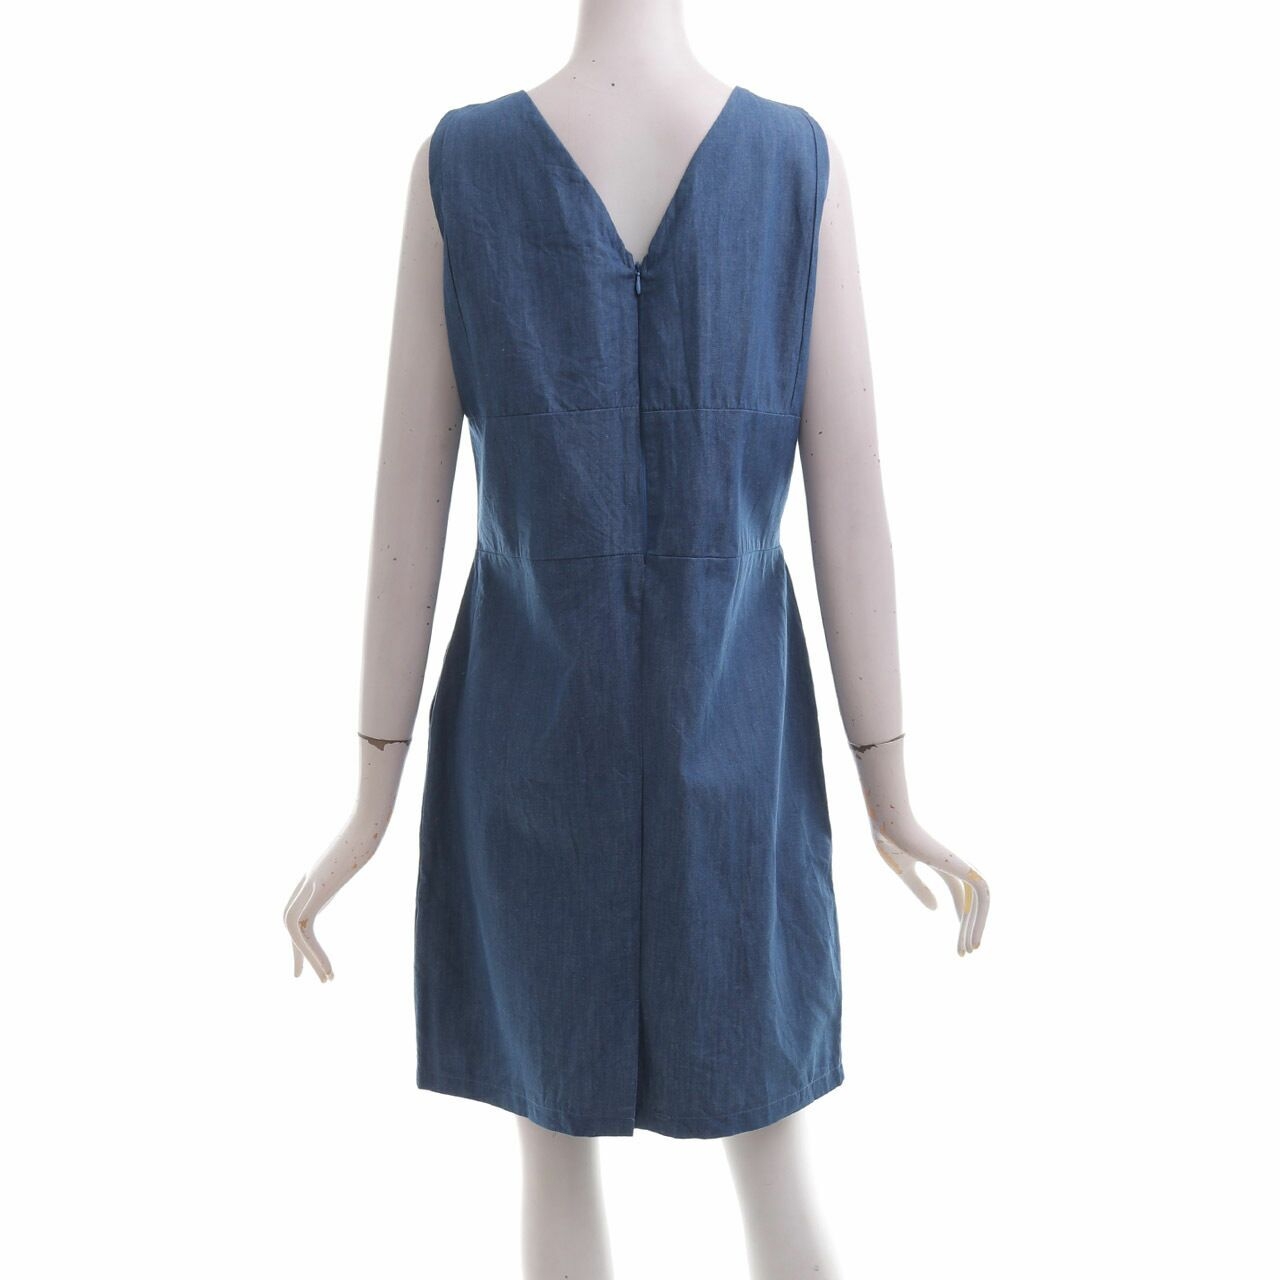 Schoncouture Dark Blue Denim Mini Dress